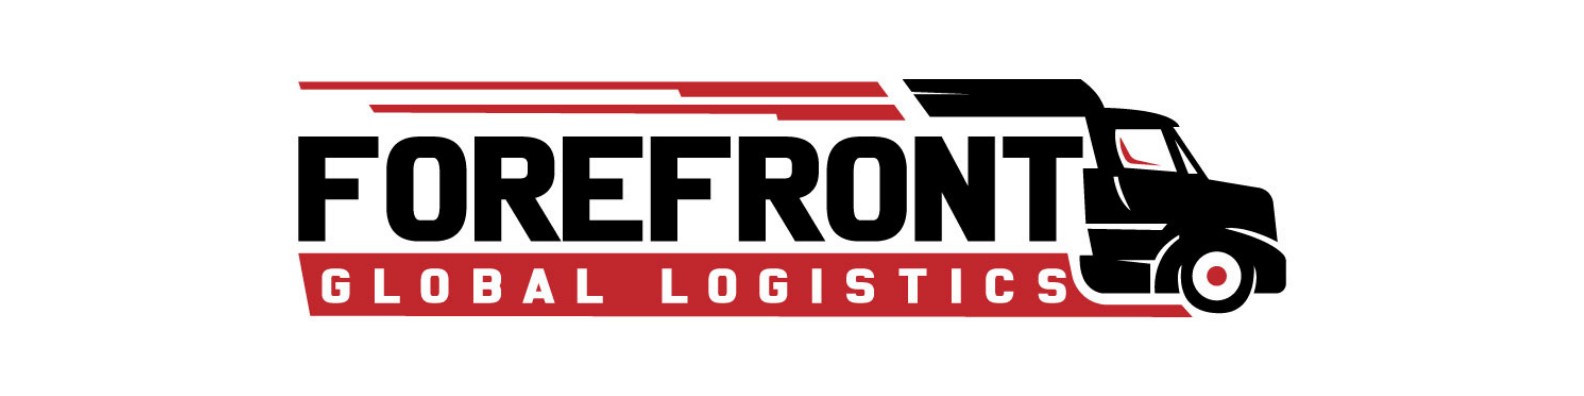 Forefront Global Logistics logo